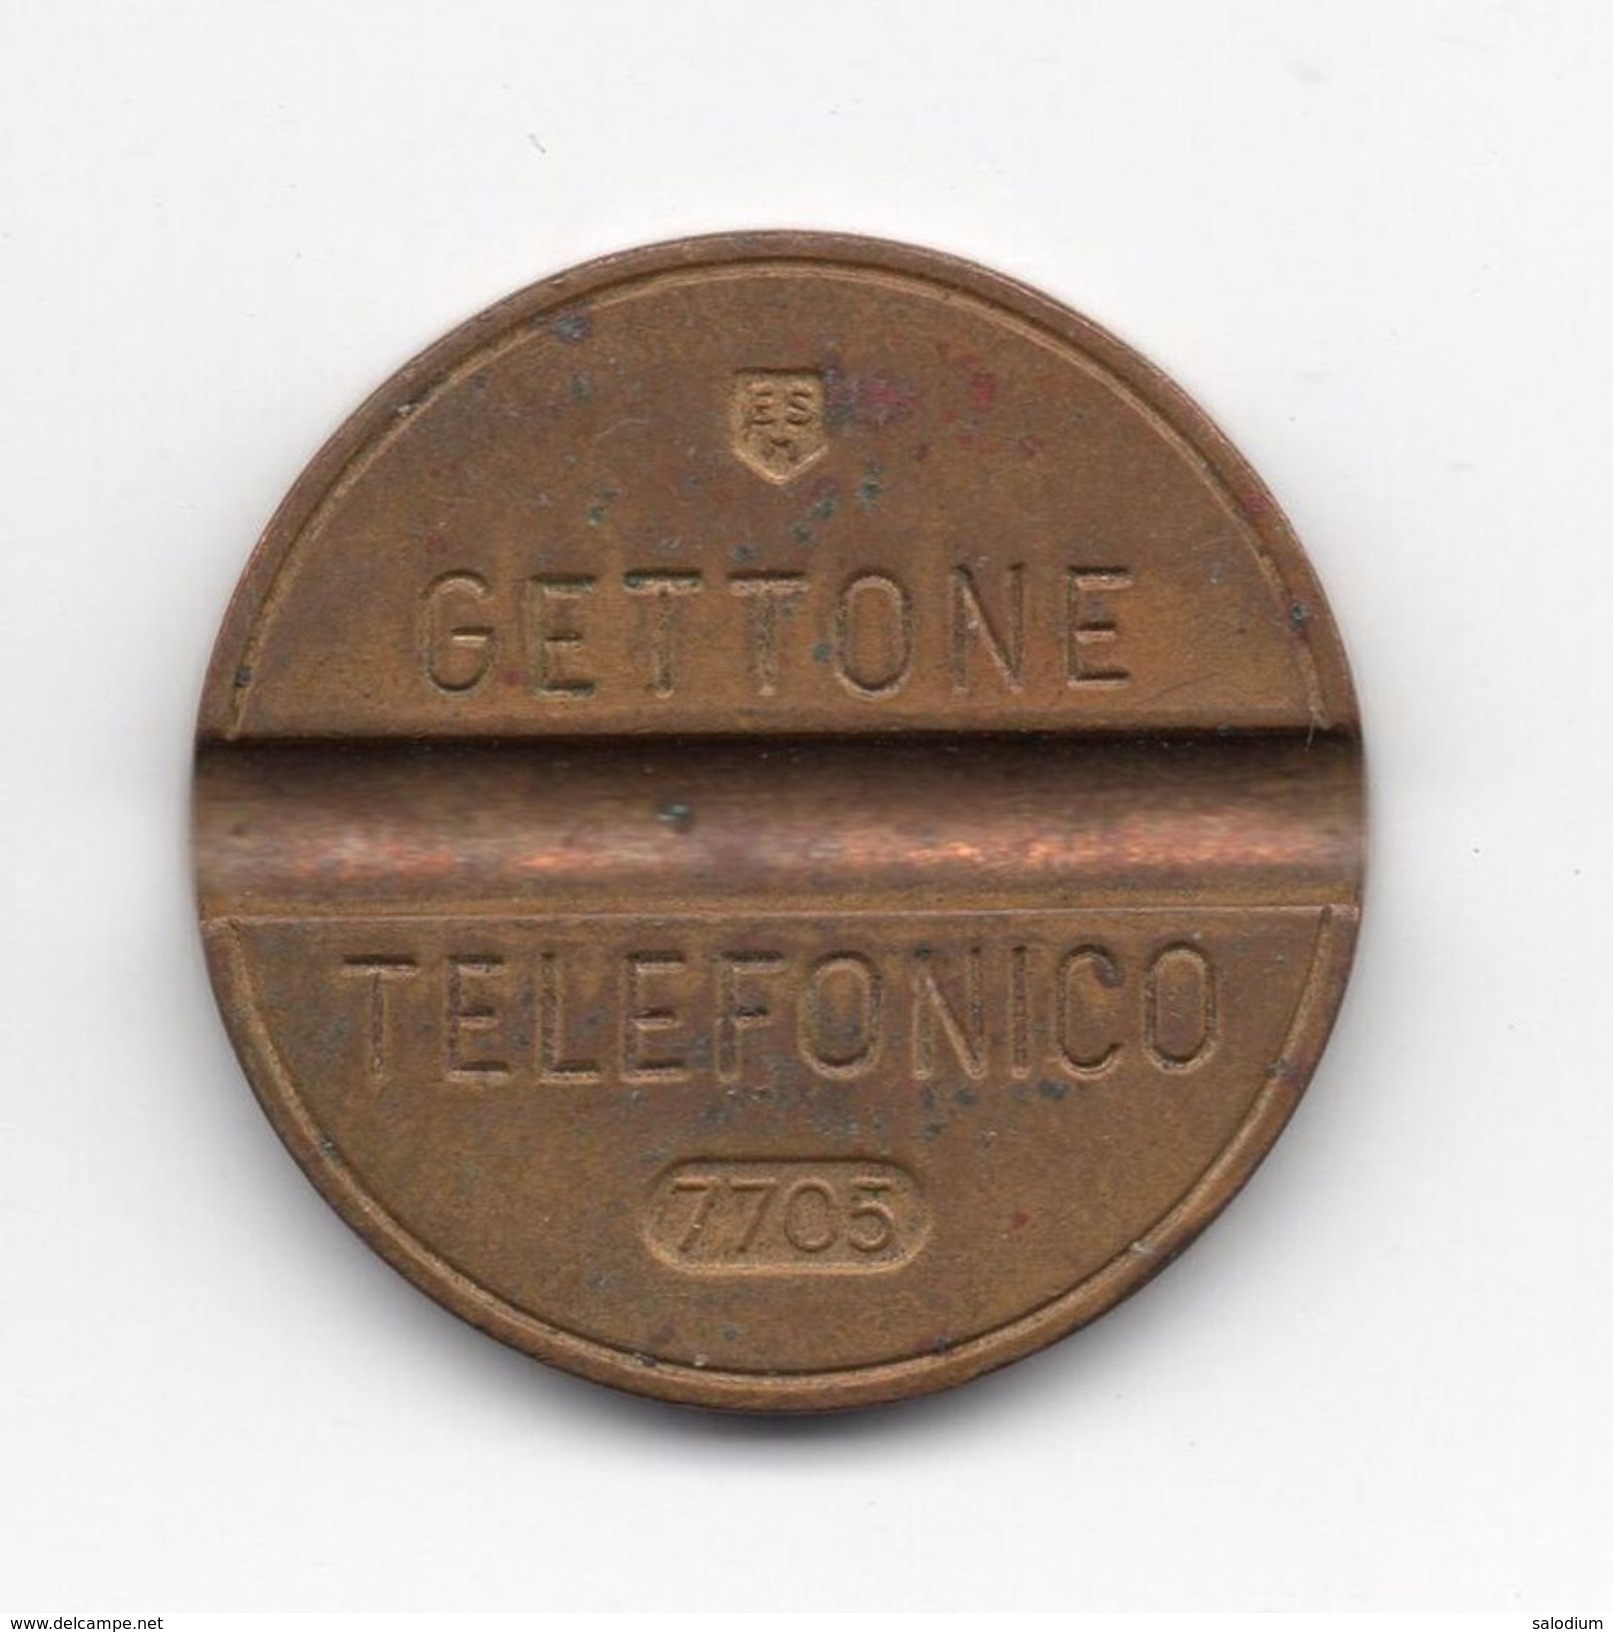 Gettone Telefonico 7705  Token Telephone - (Id-817) - Professionnels/De Société